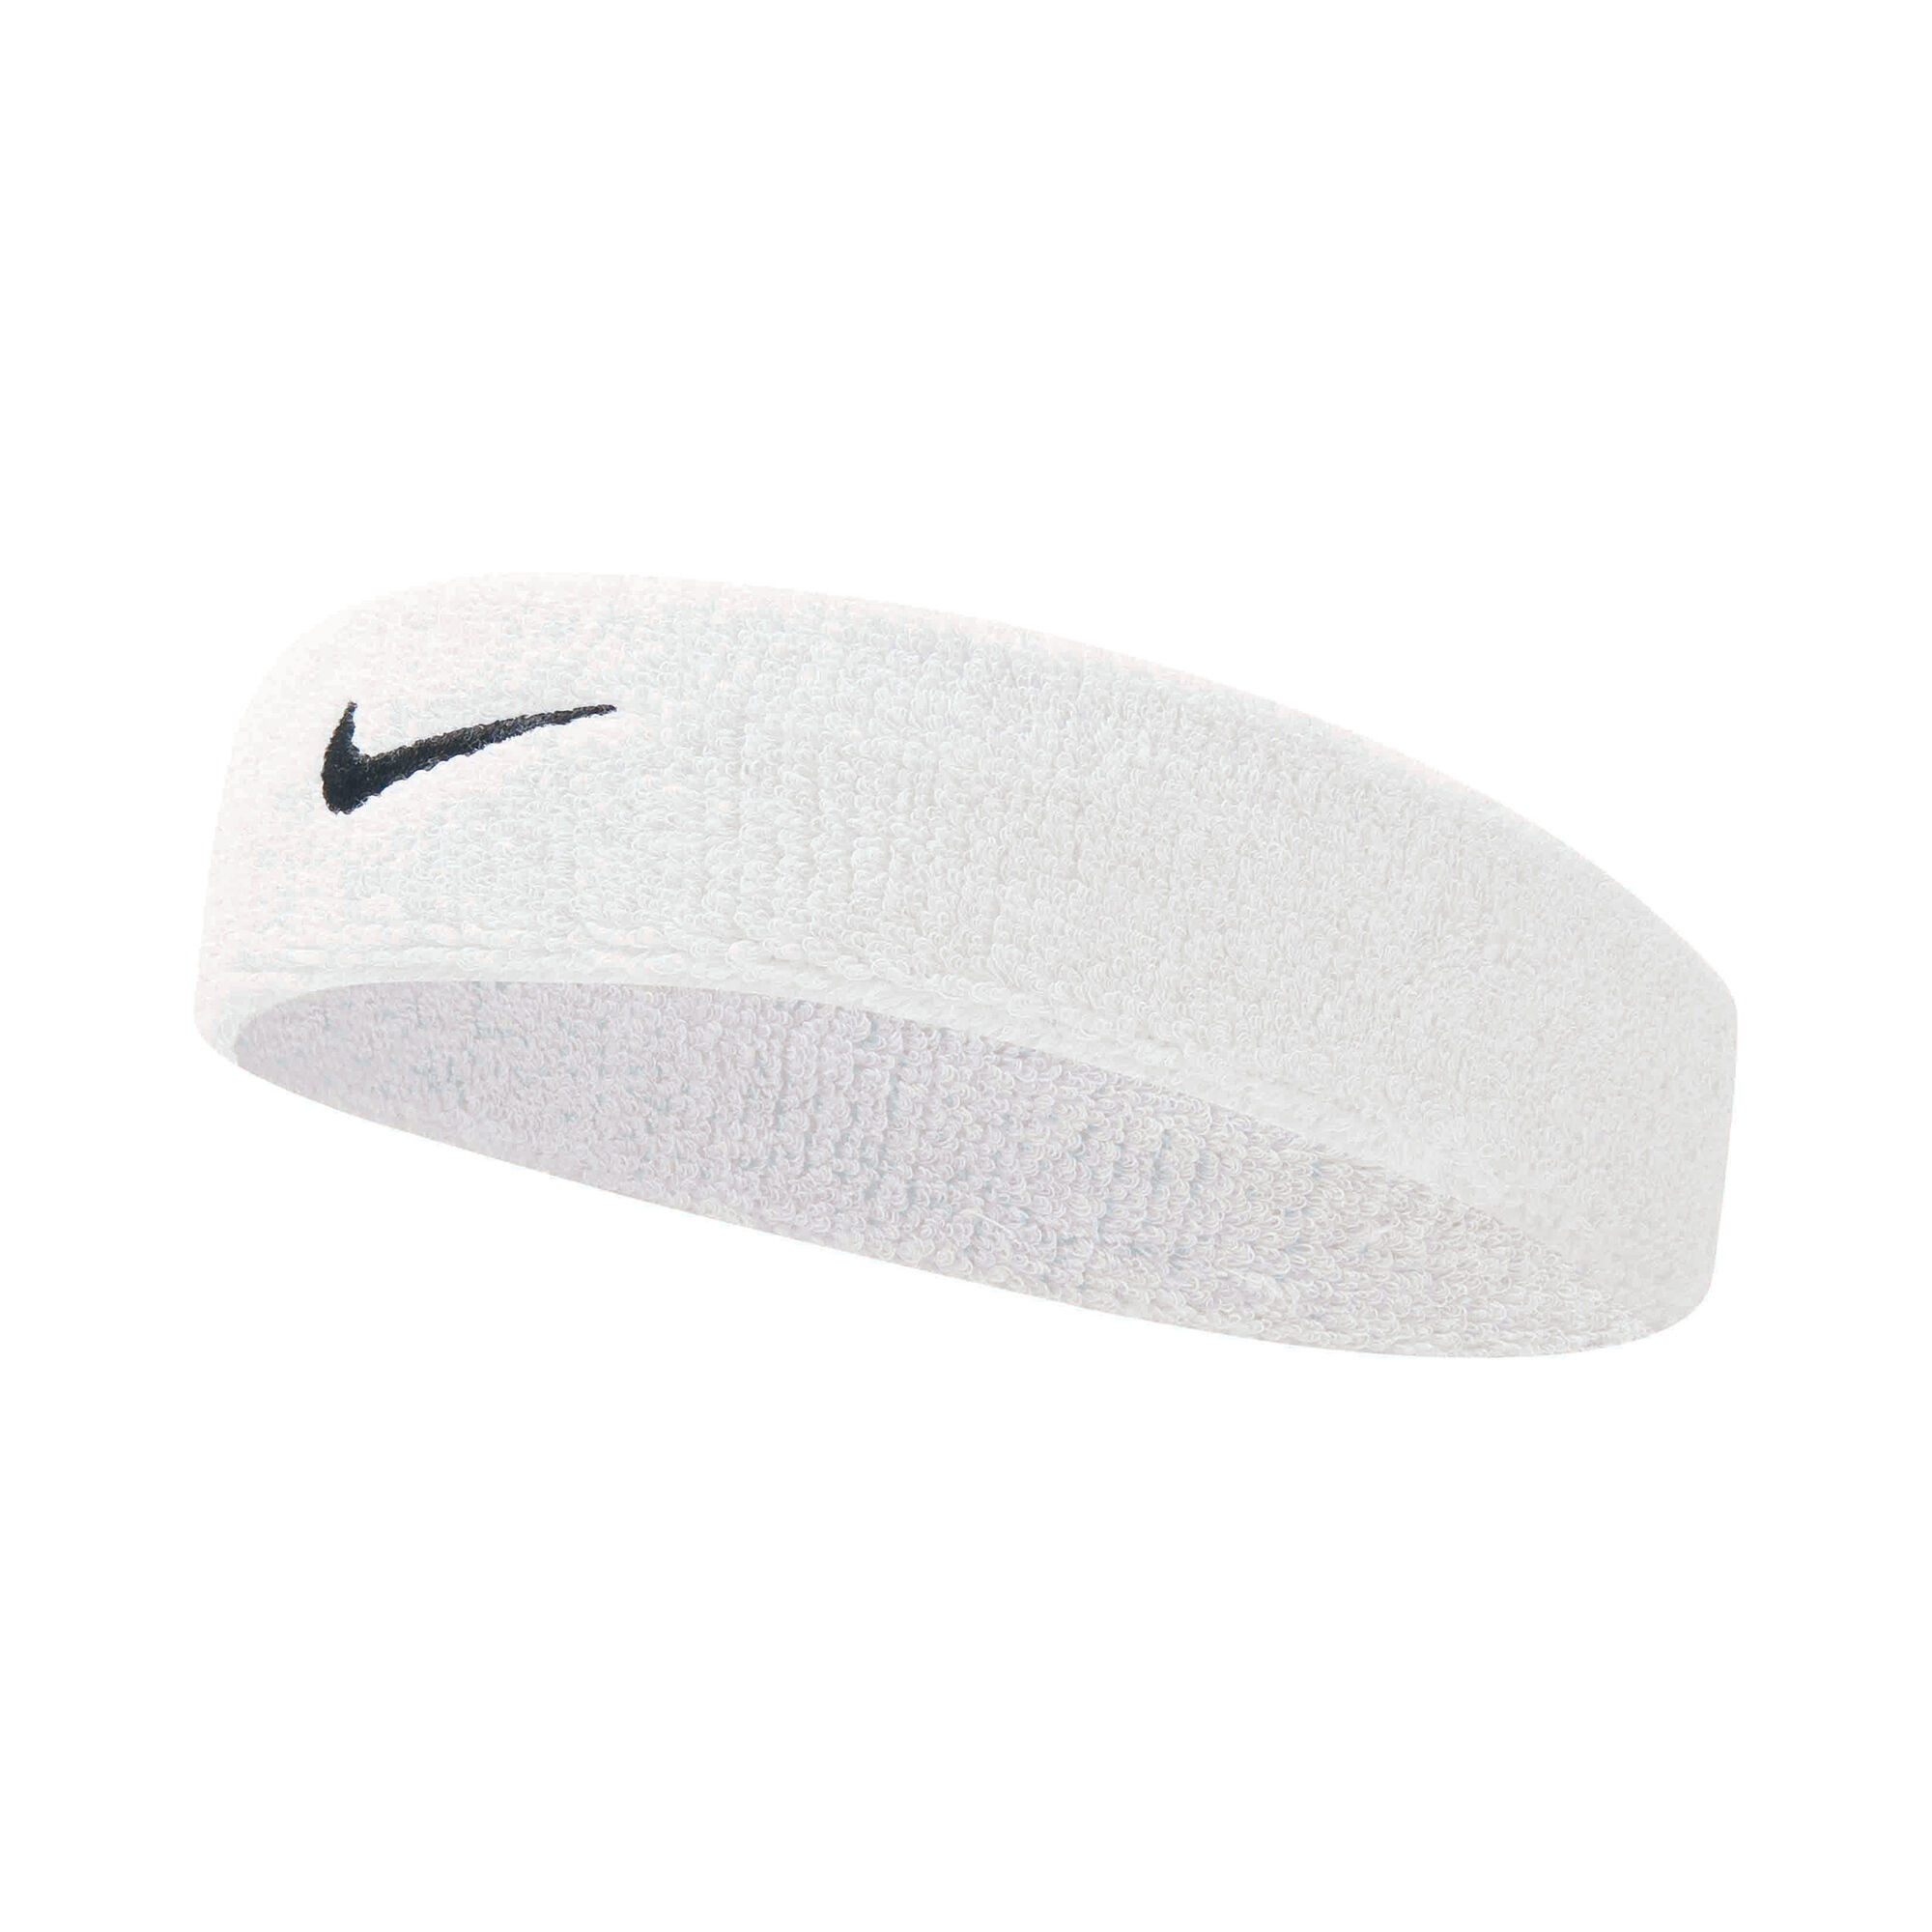 Pelmel overschreden Onophoudelijk Nike Swoosh Hoofdband - Wit, Zwart online kopen | Tennis-Point